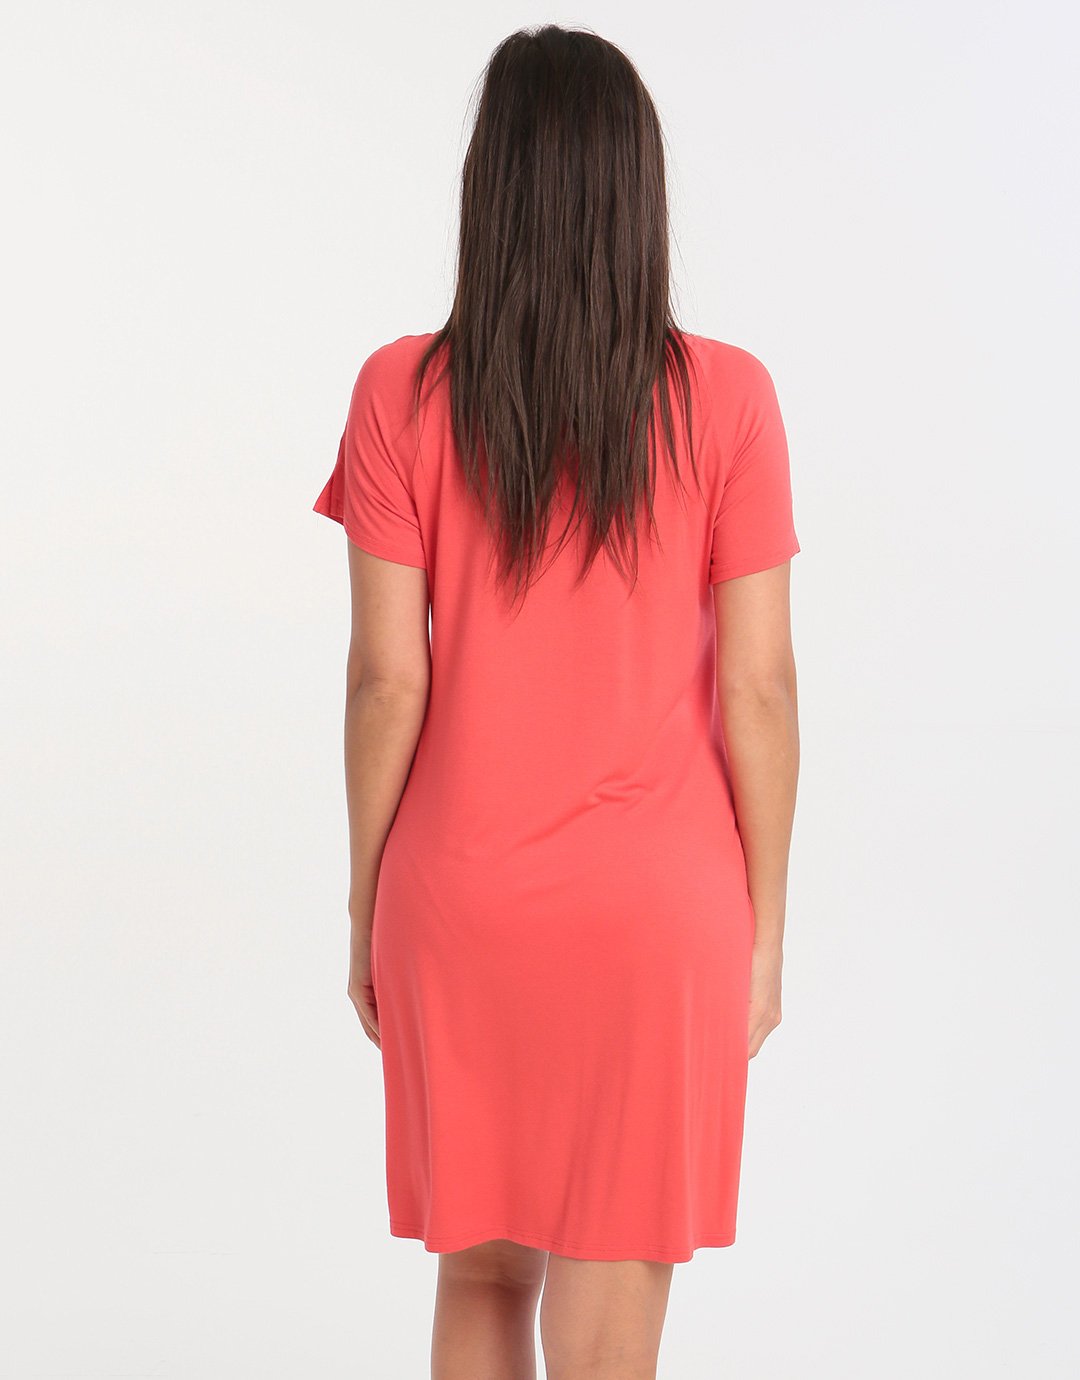 Charmor Short Sleeve Dress - Red